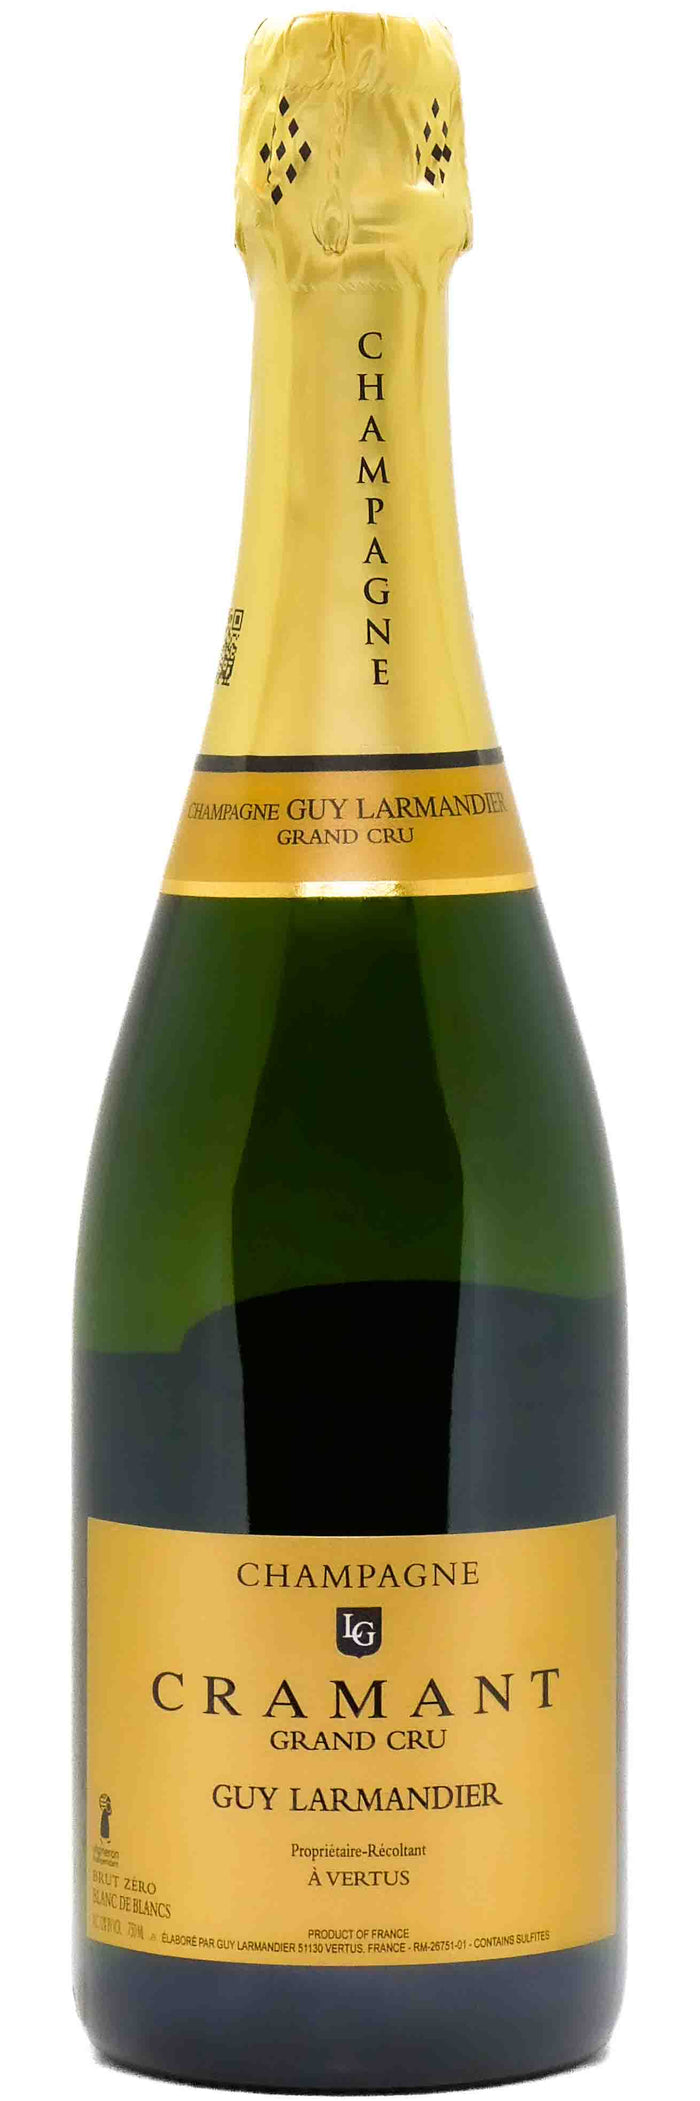 Larmandier Champagne Cramant Grand Cru Brut Zéro